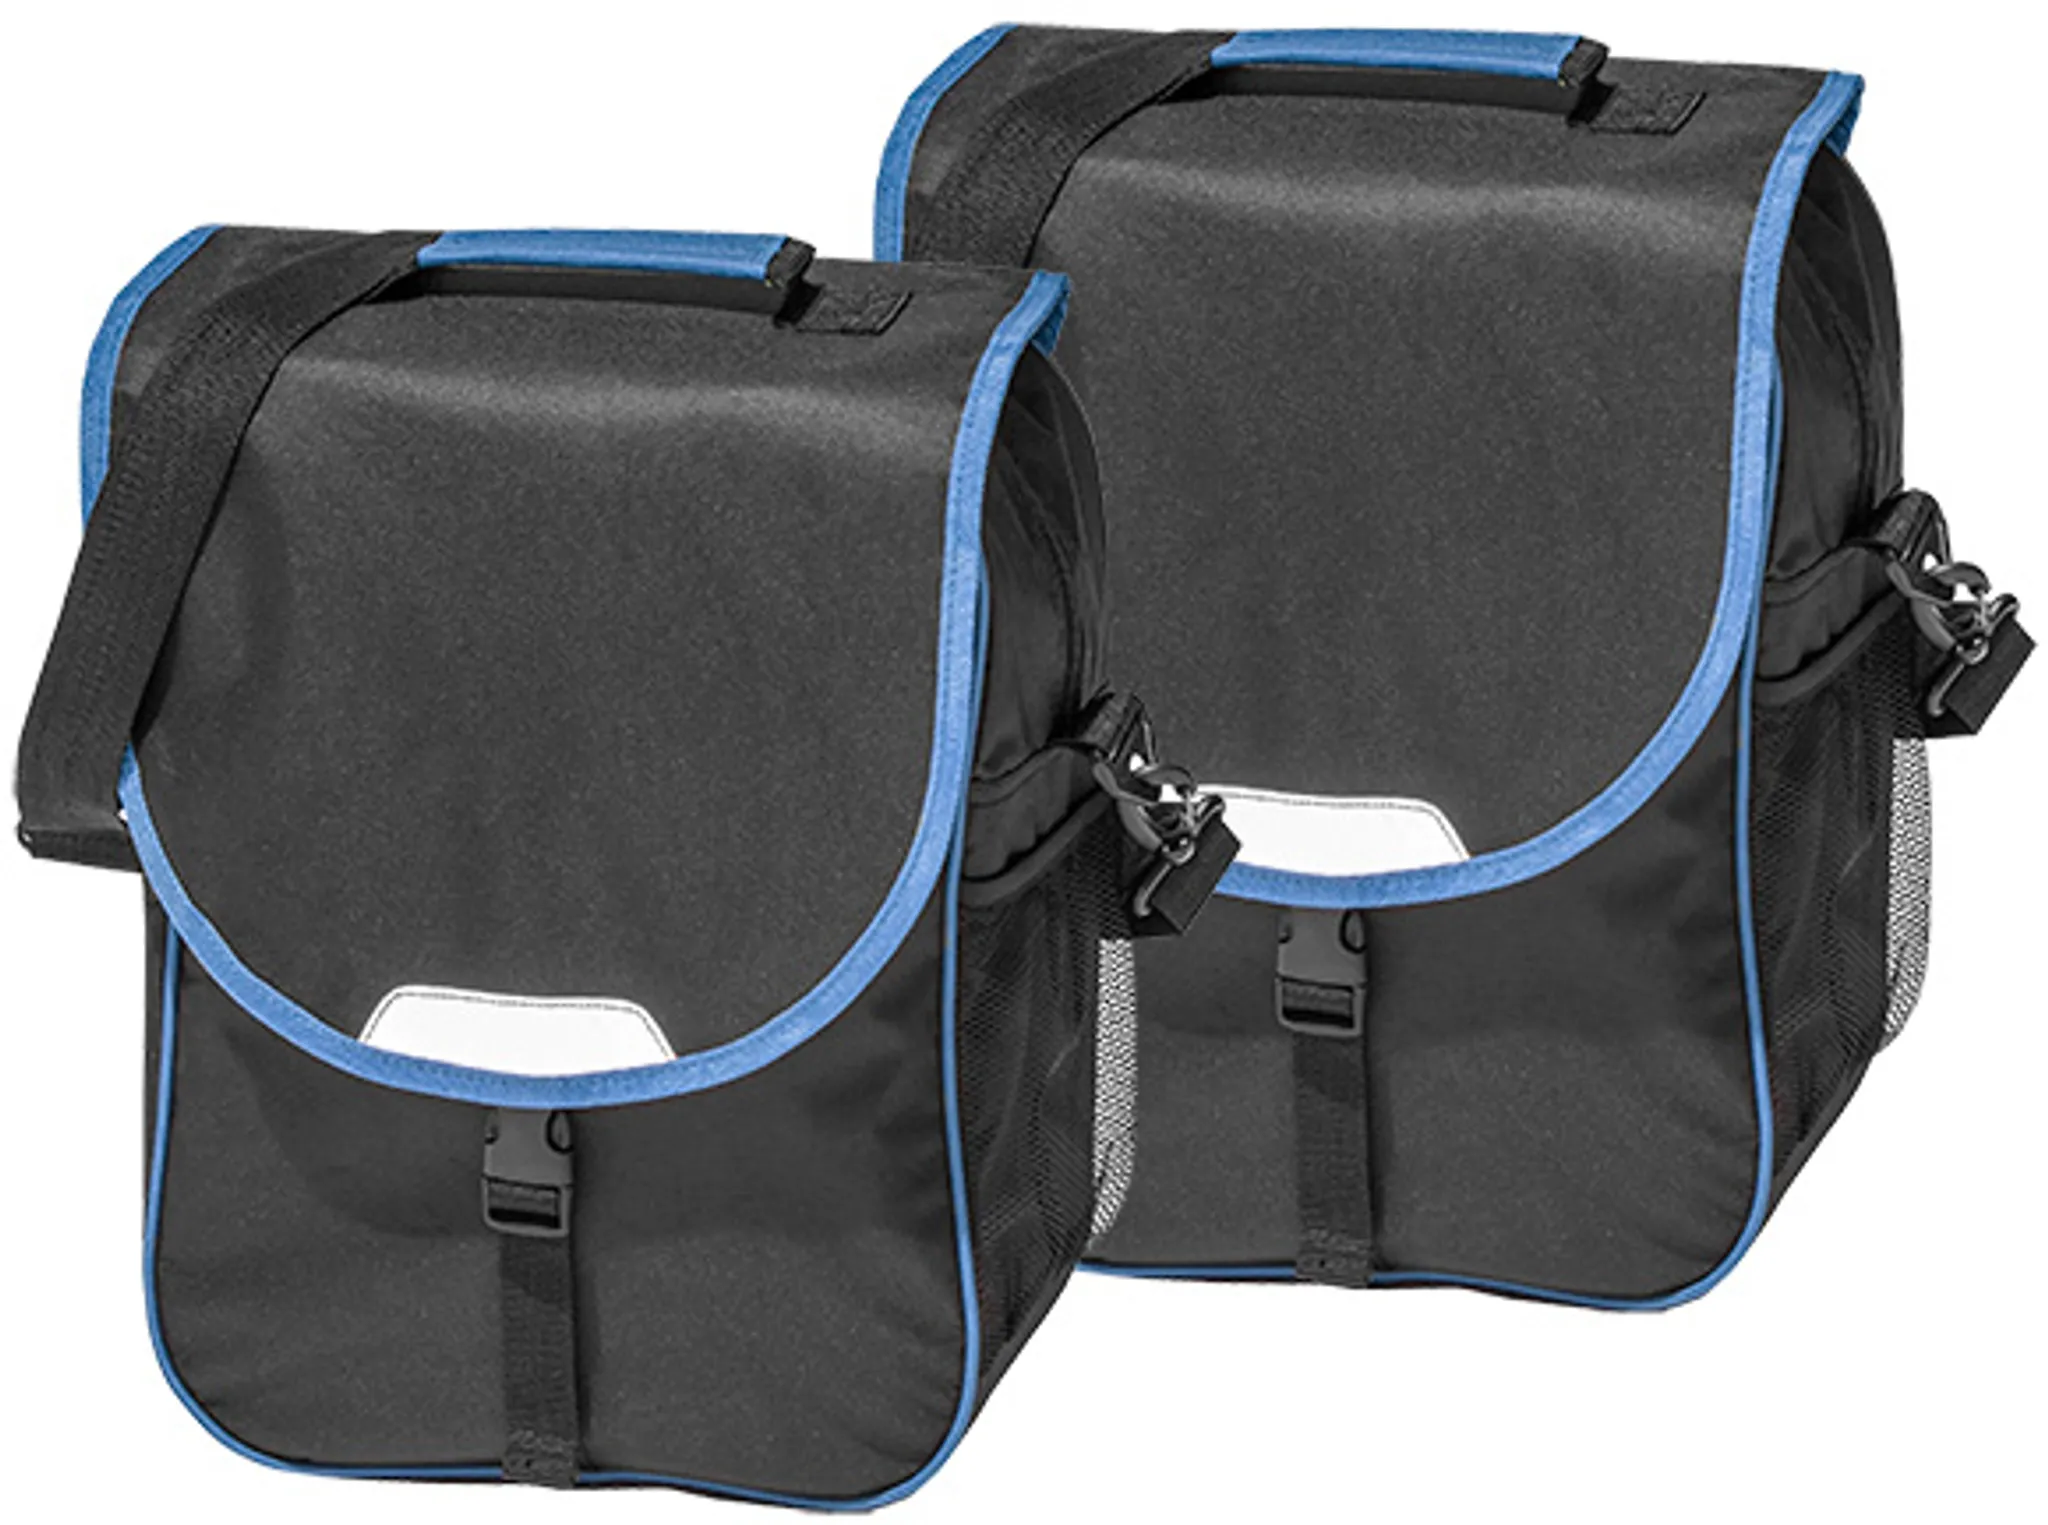 【auf Lager】 Fahrradtasche 16J030-B08 Gepäckträger Set Tasche schwarz/blau 2er